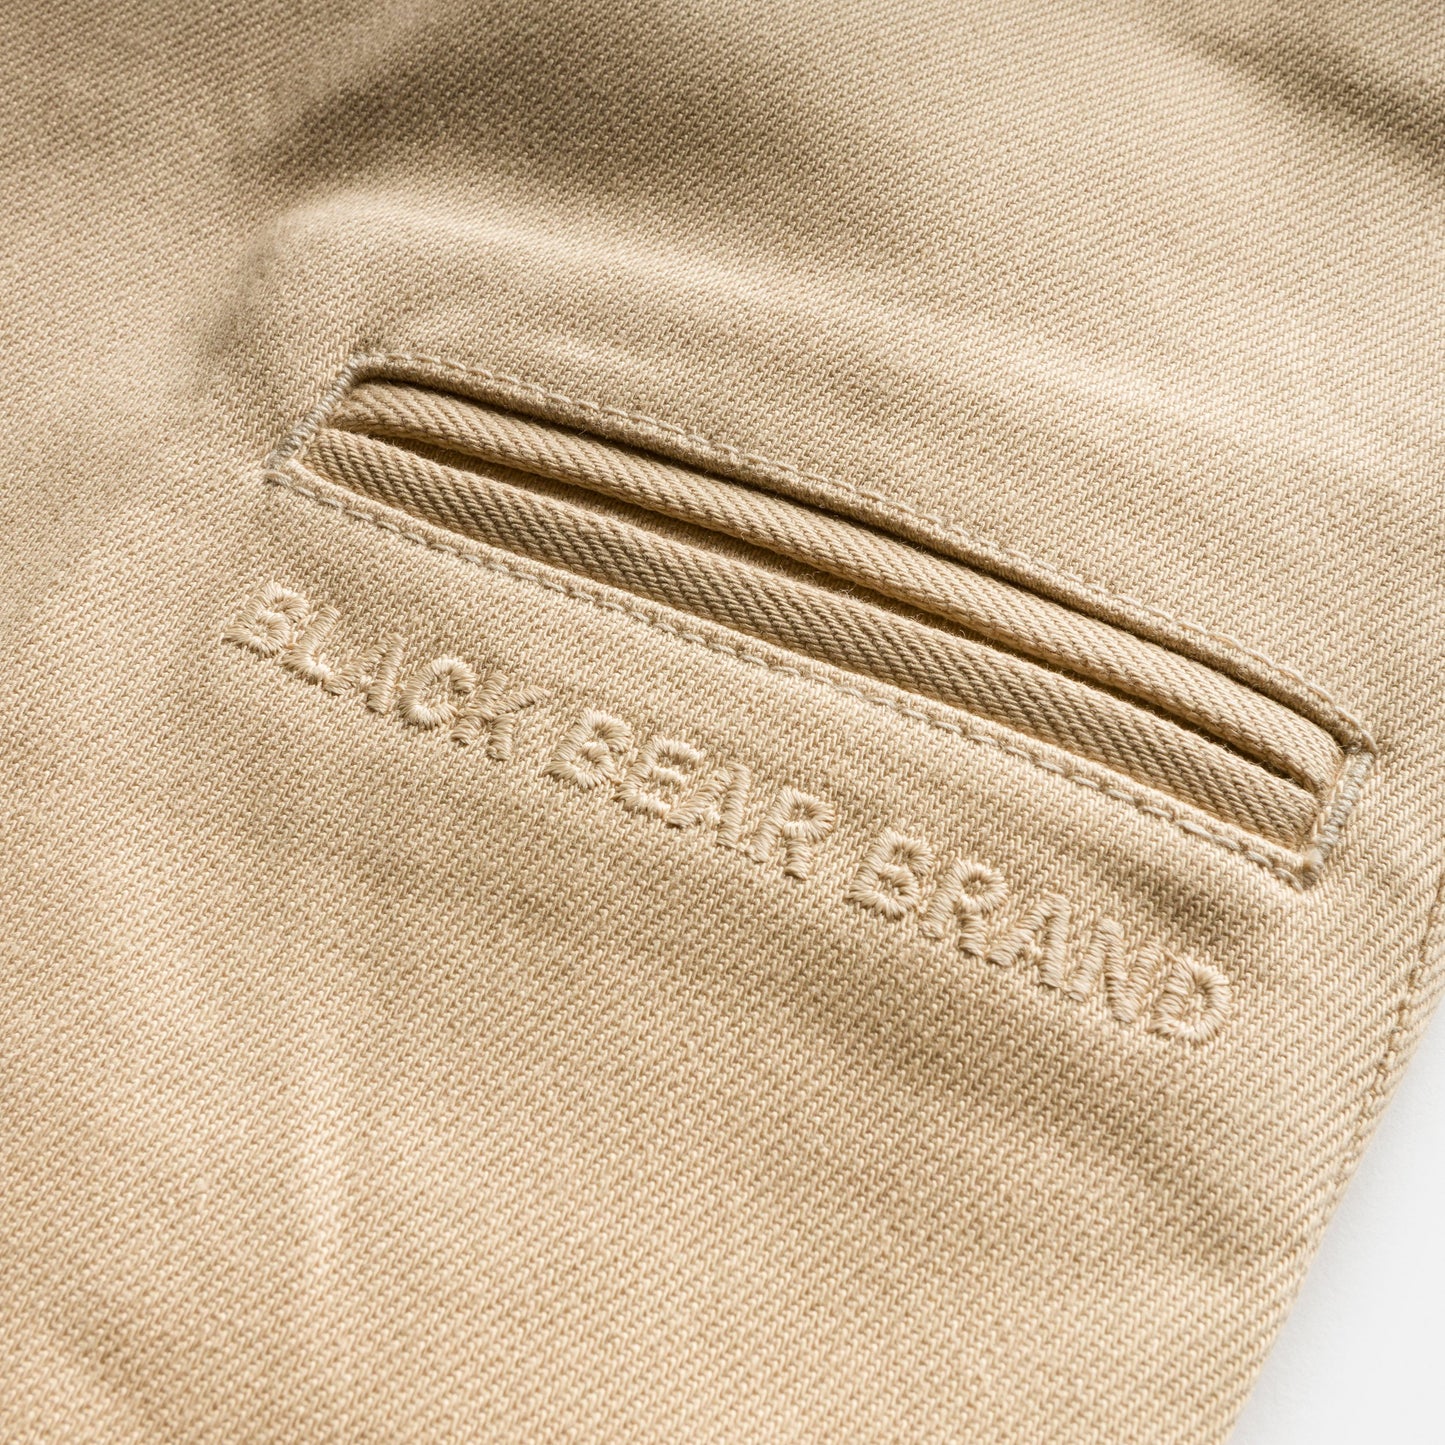 the Black Bear Brand SKATE Pant (Khaki)